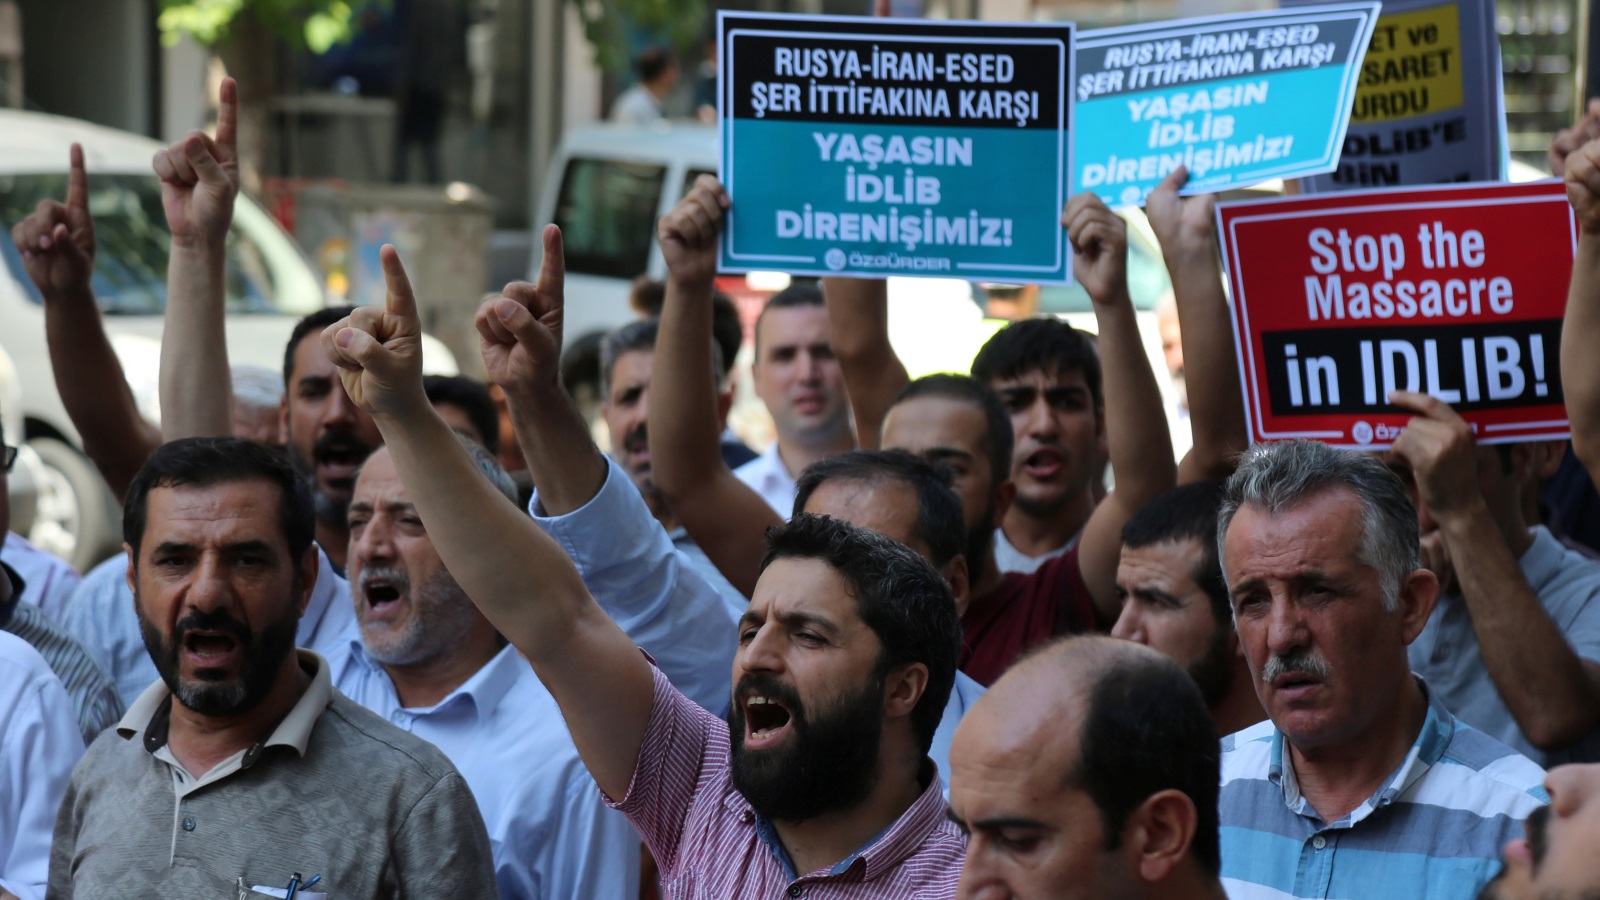  متظاهرون بمدينة ديار بكر التركية يطالبون بوقف مجزرة إدلب 